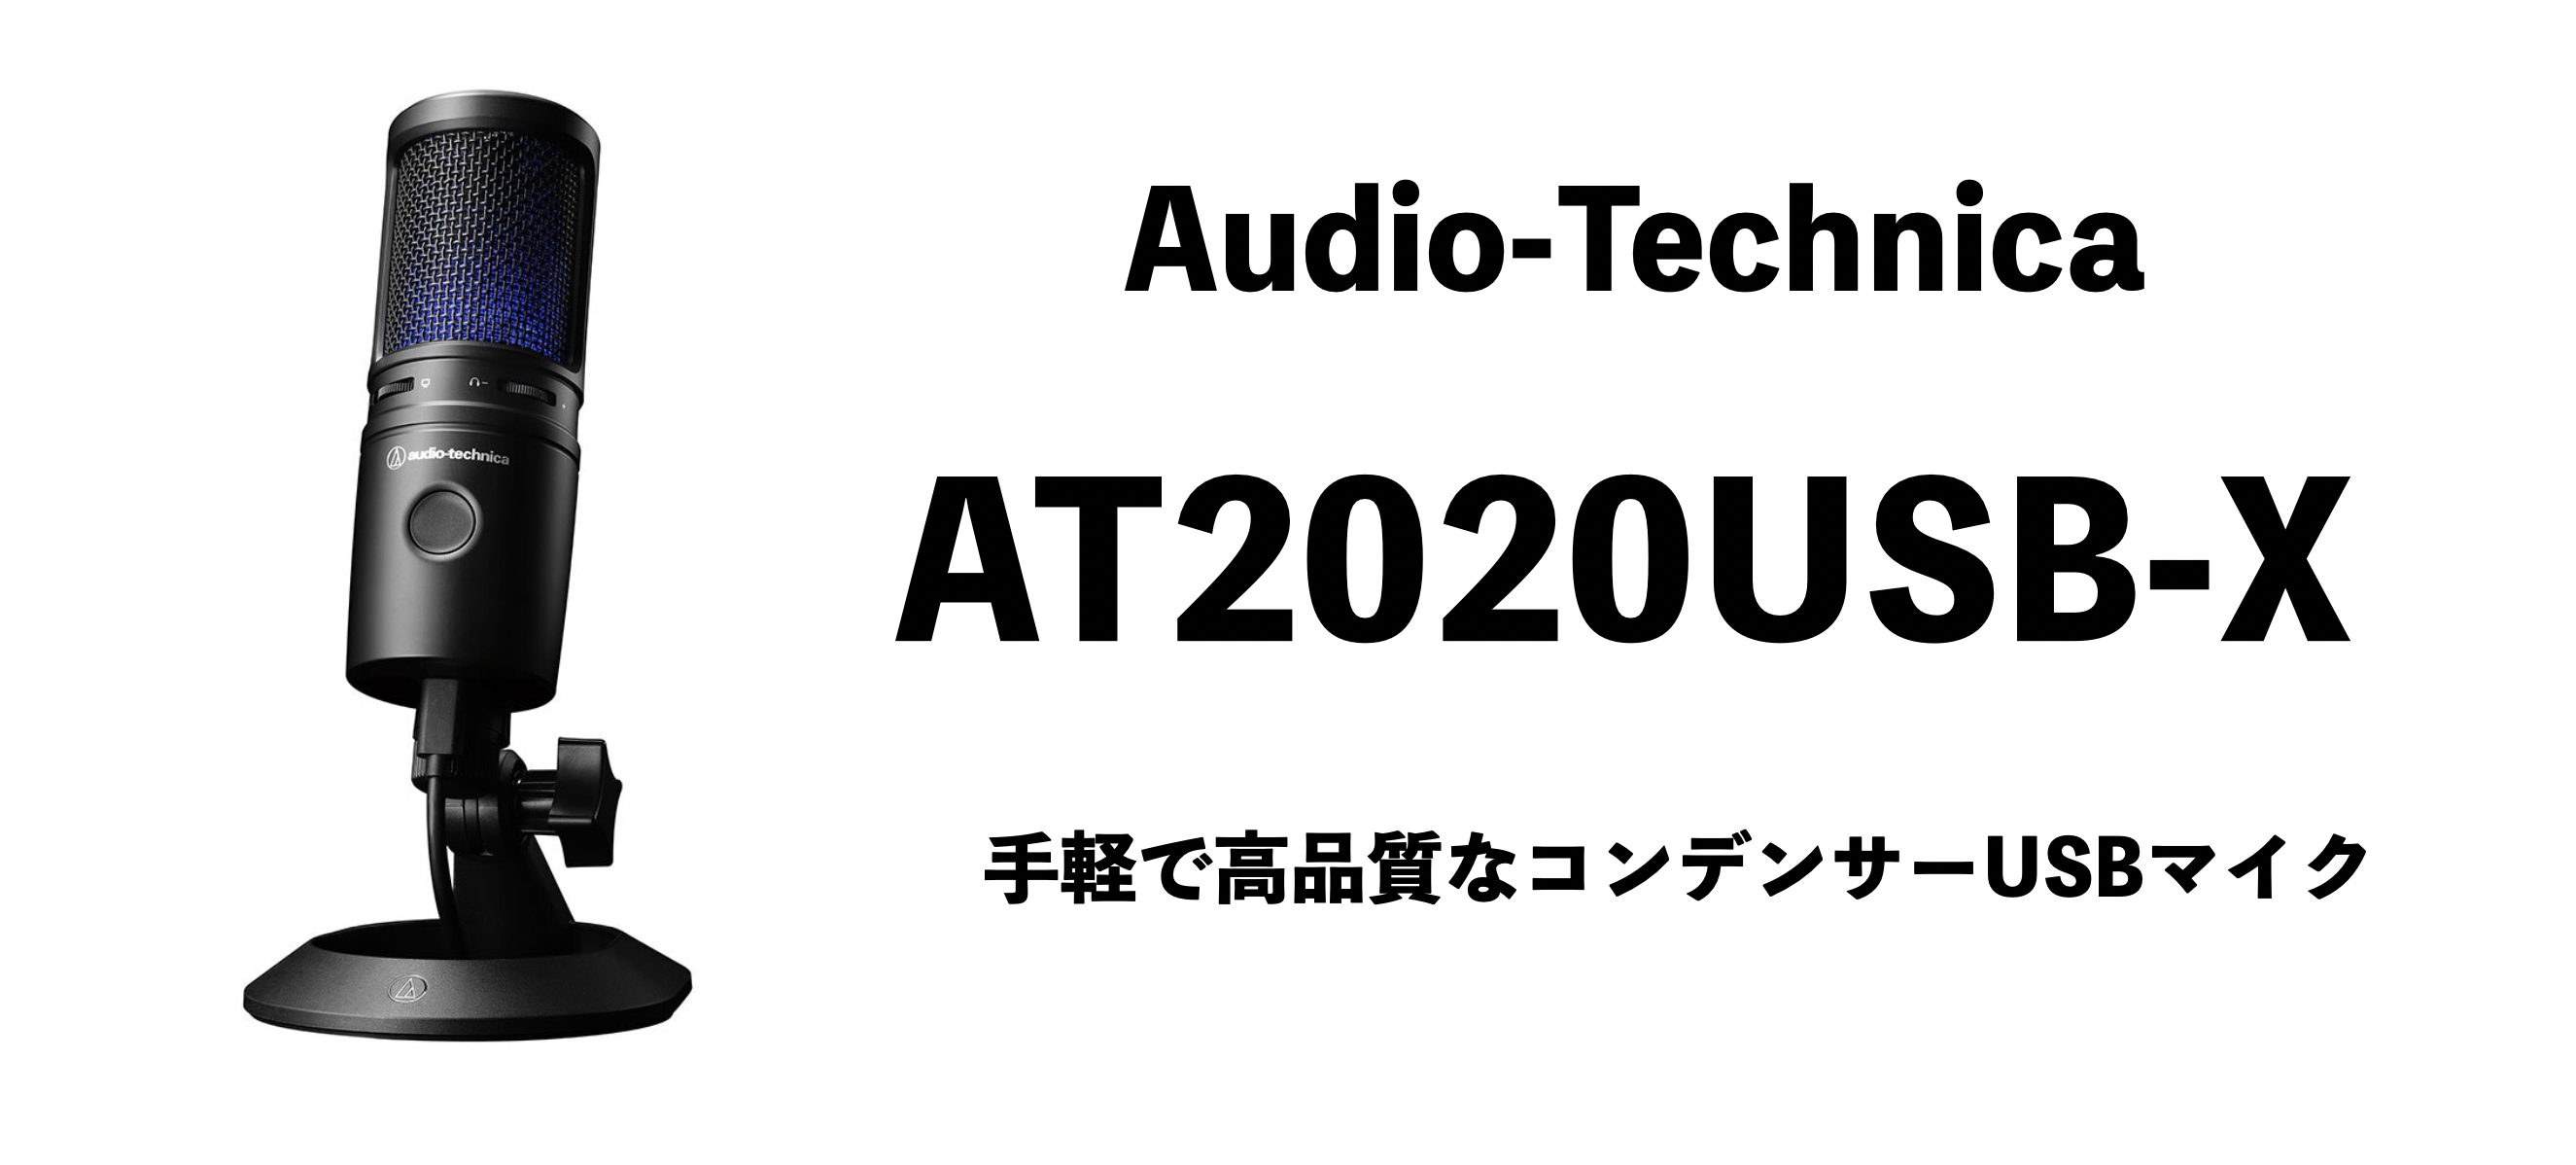 安い購入 《在庫あり 即納可能》 audio-technica オーディオテクニカ USB マイクロホン AT2020USB-X 